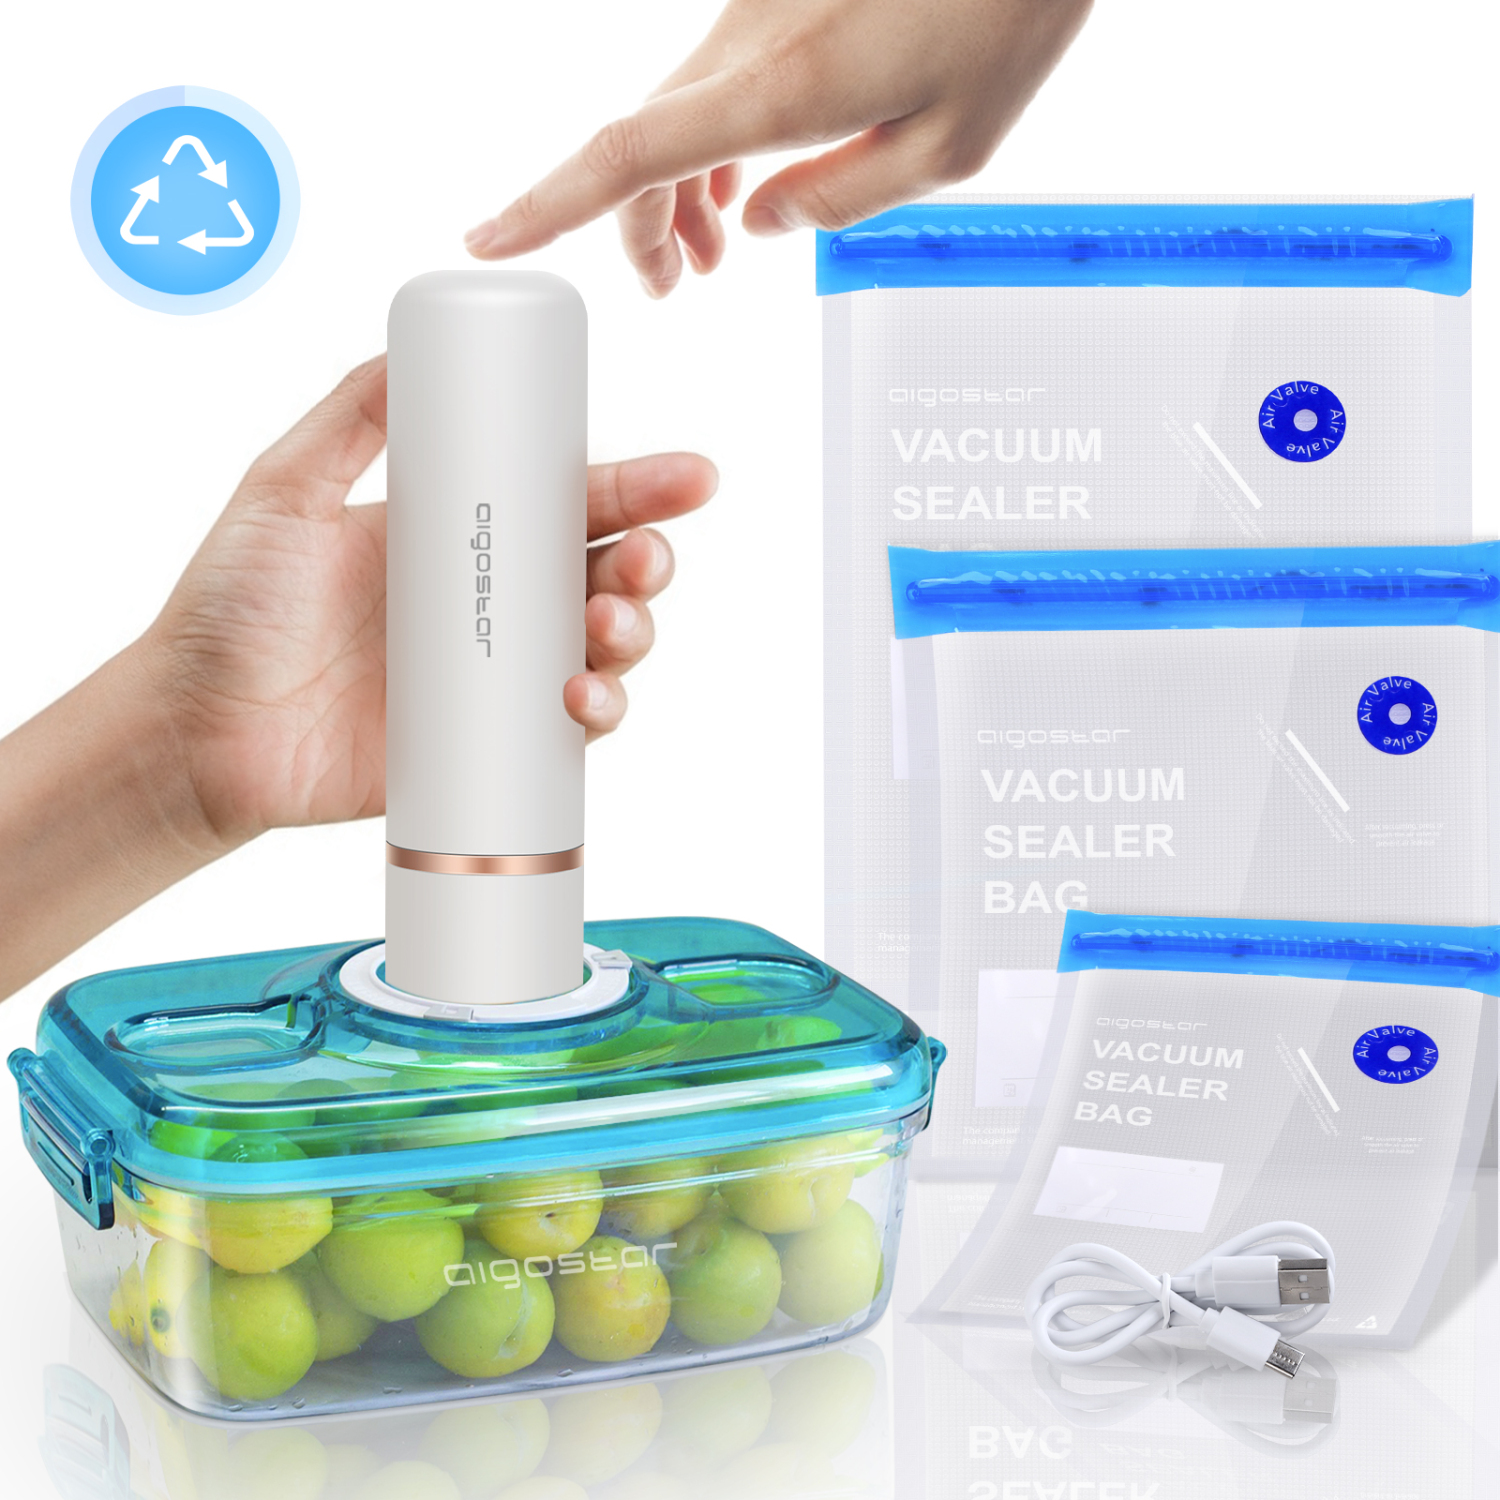 Aigostar Fresh – Pack mini pompe scelleuse sous vide automatique, sacs sous vide et récipient à vide. Faciles à utiliser, sûrs et économique. Chargement USB.